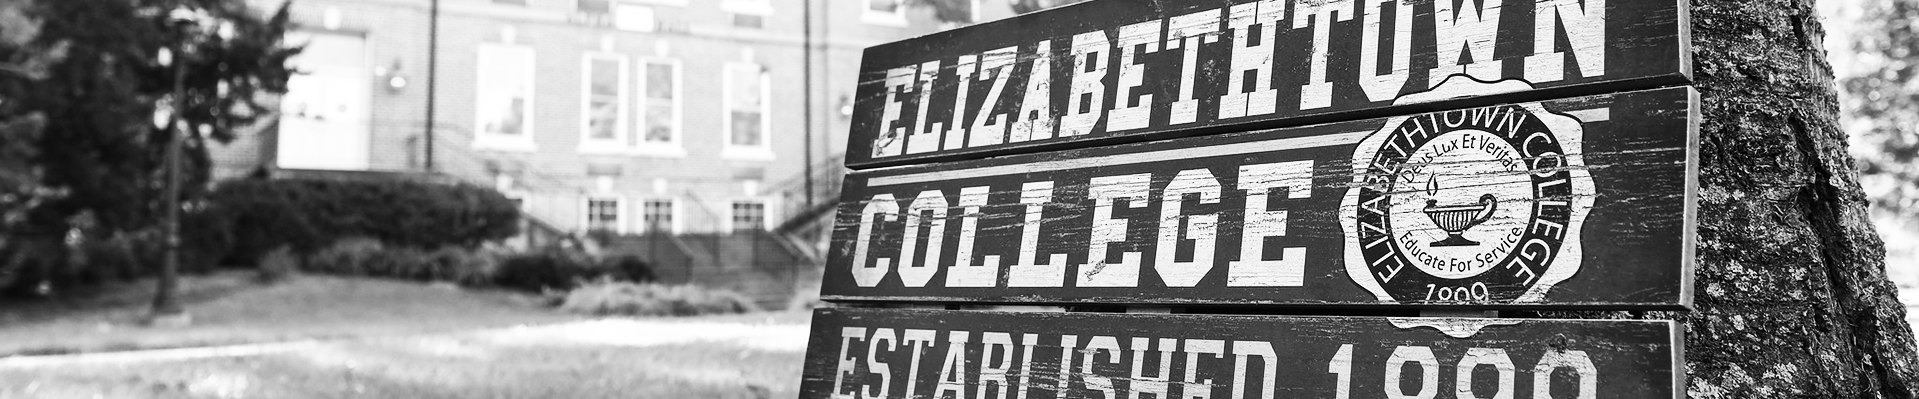 Elizabethtown college sign 